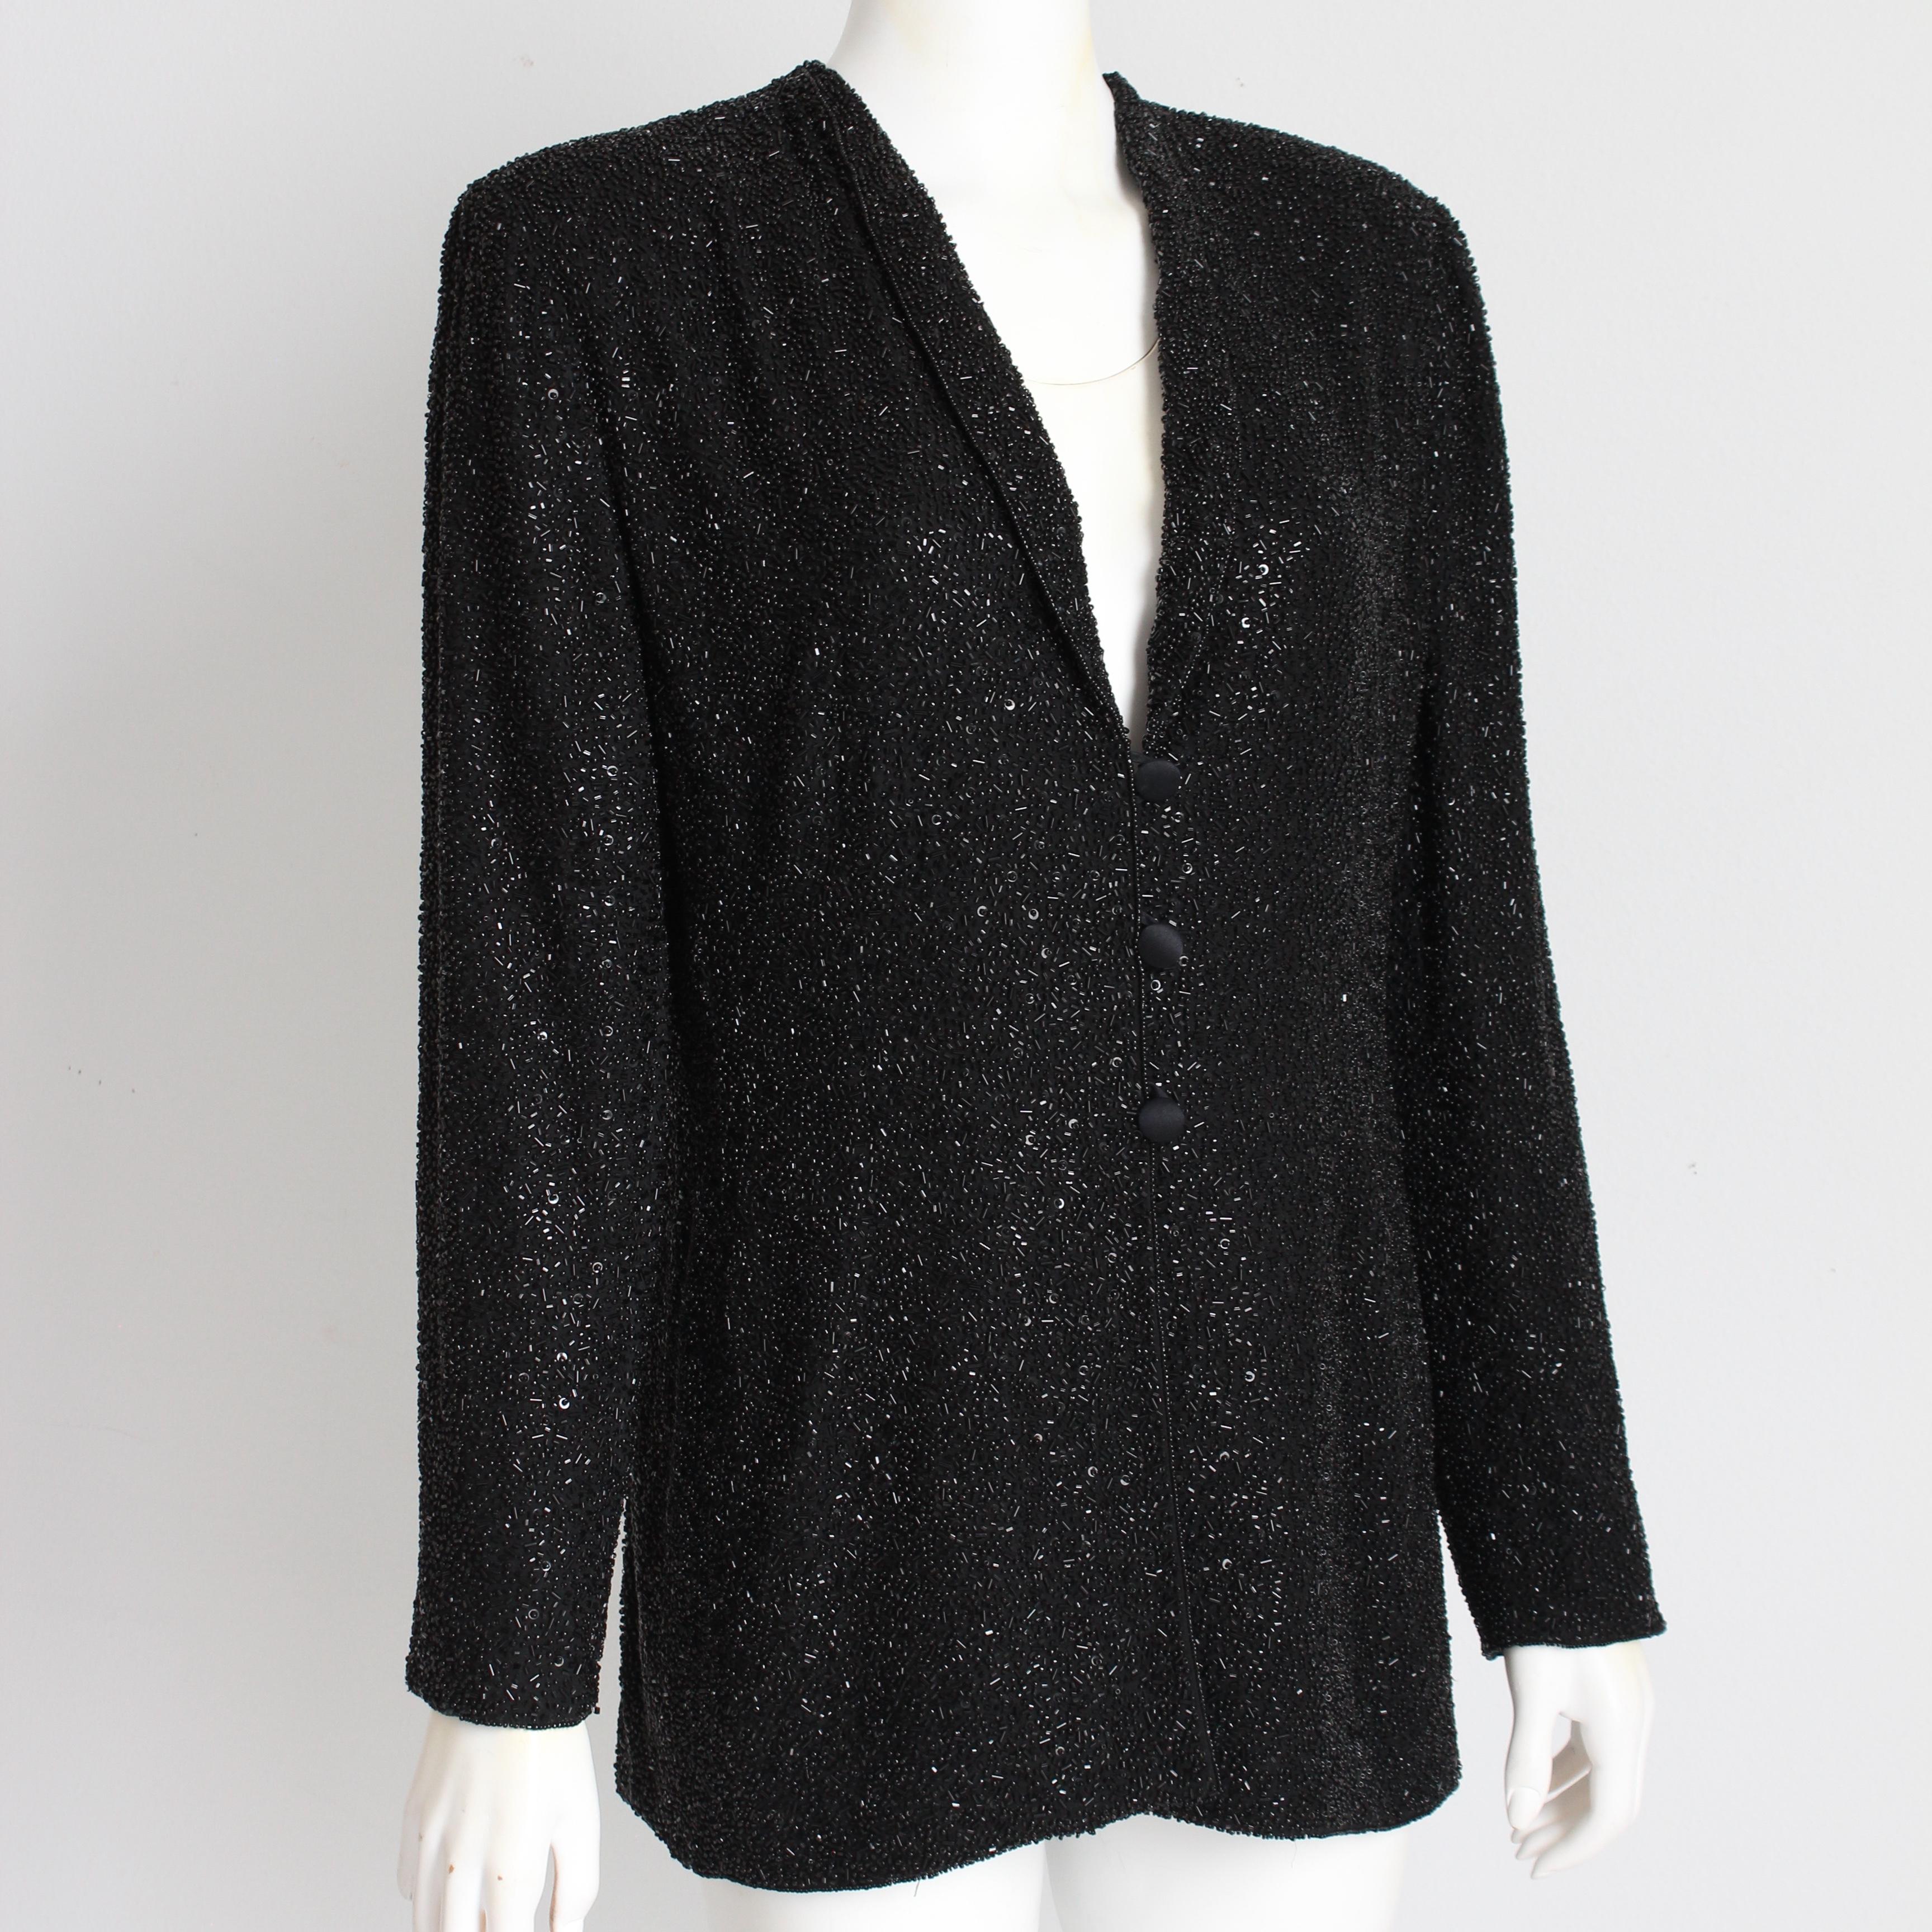 Authentique veste vintage d'occasion, fabriquée par Escada Couture, très probablement au milieu des années 90.  Fabriquée en soie noire, cette veste de style smoking est recouverte de TONNES de perles de jais noir qui brillent et scintillent à la